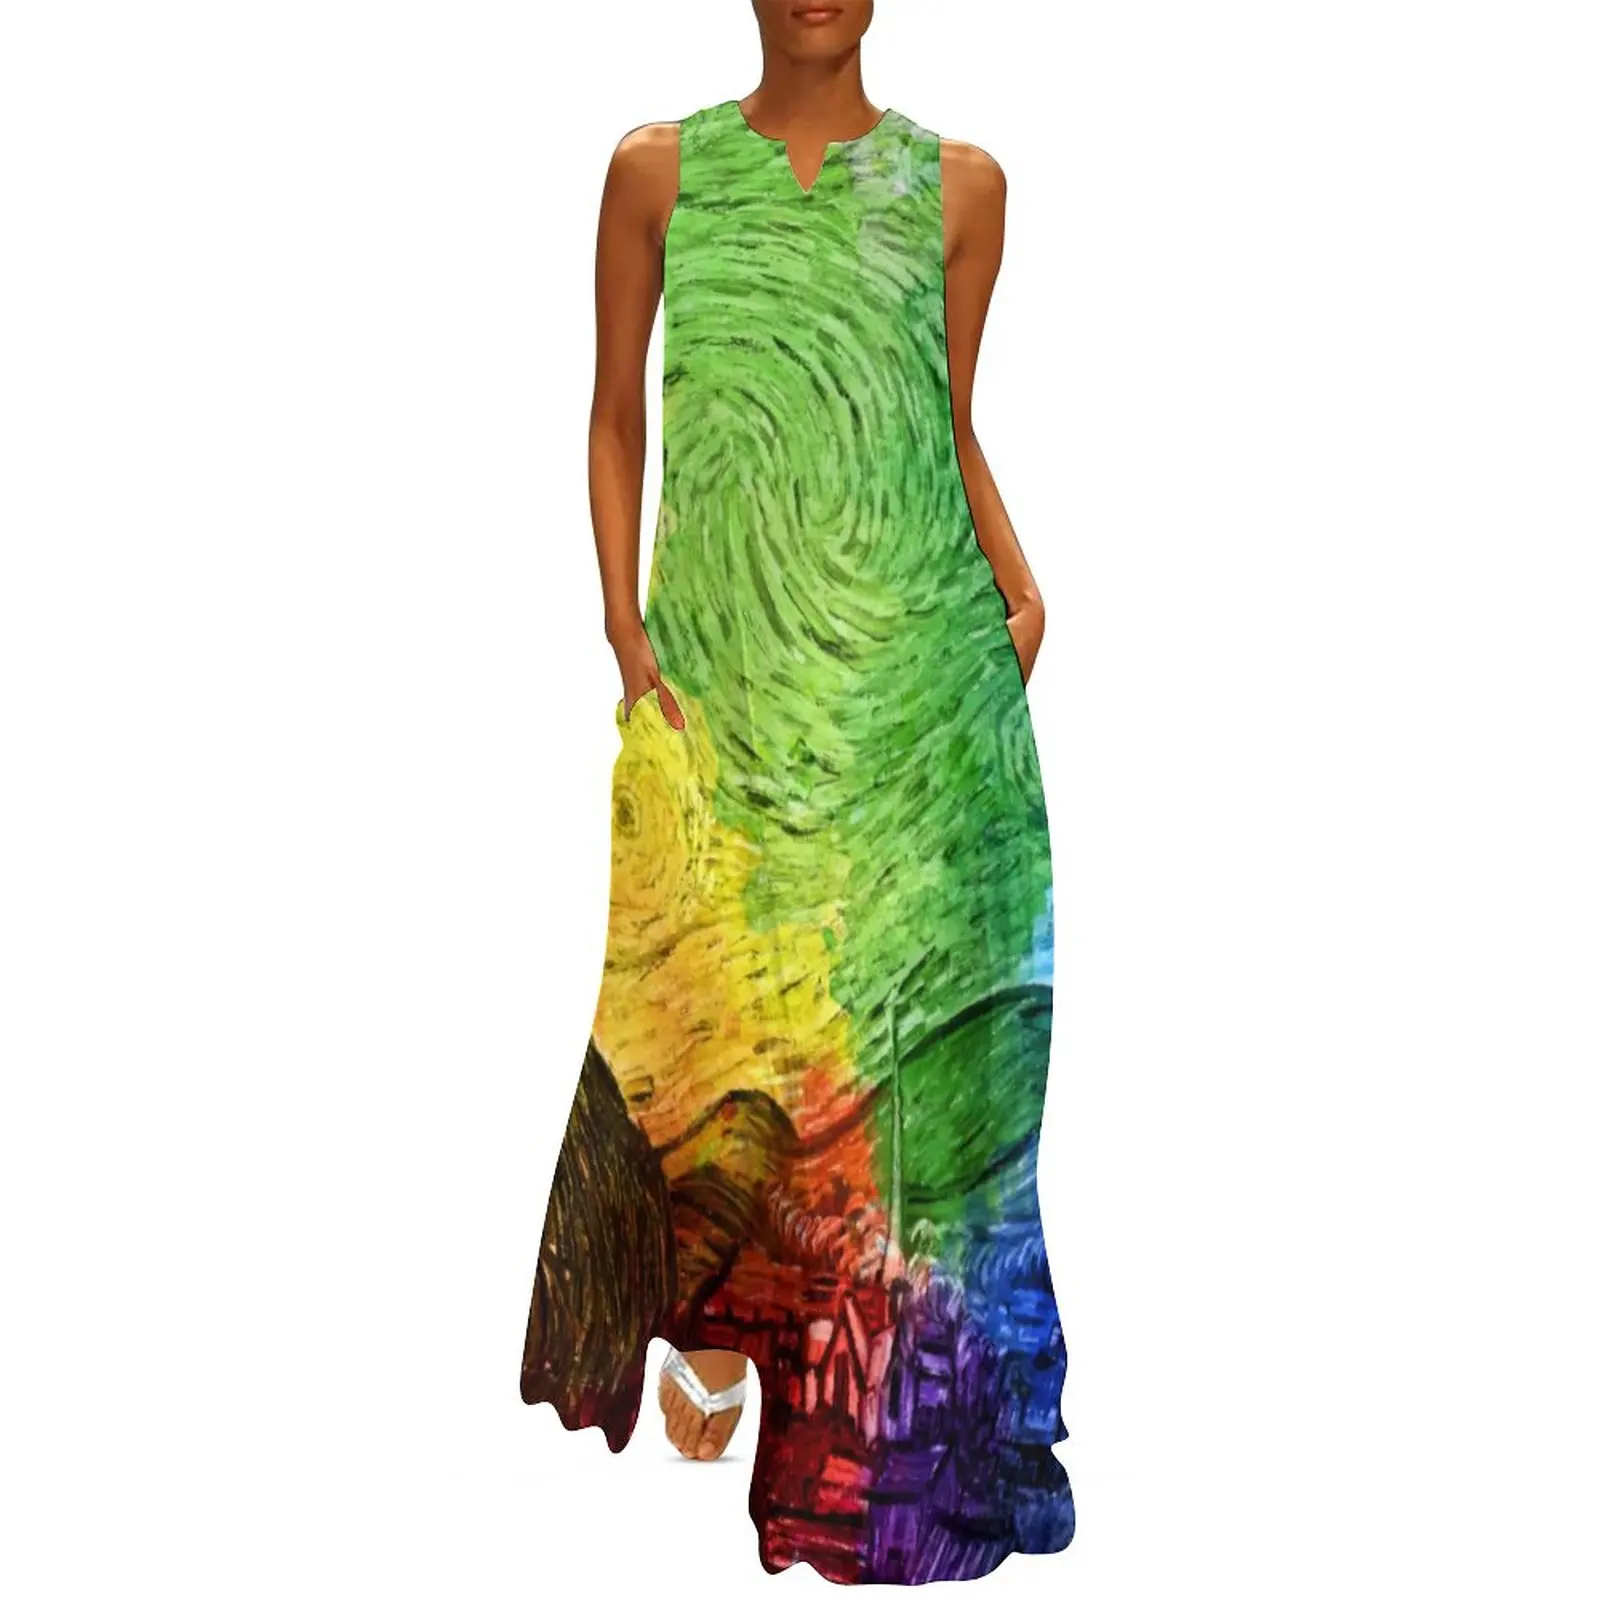 

Женское пляжное платье с принтом «Звездная ночь»